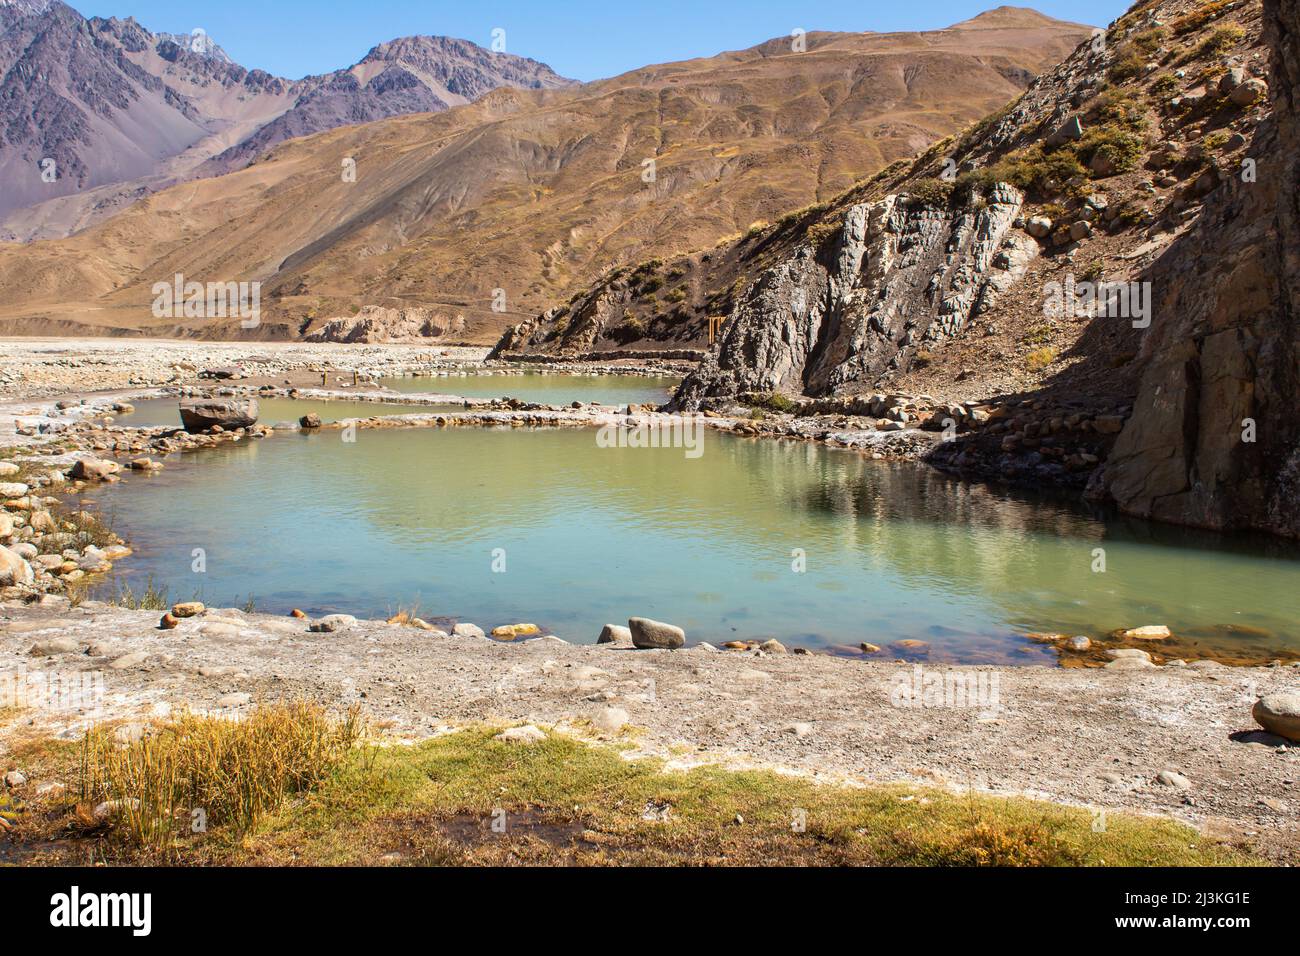 Sorgenti termali naturali nei pressi di Cajon del Maipo, Cile. Piscine di acqua termale calda. Foto Stock